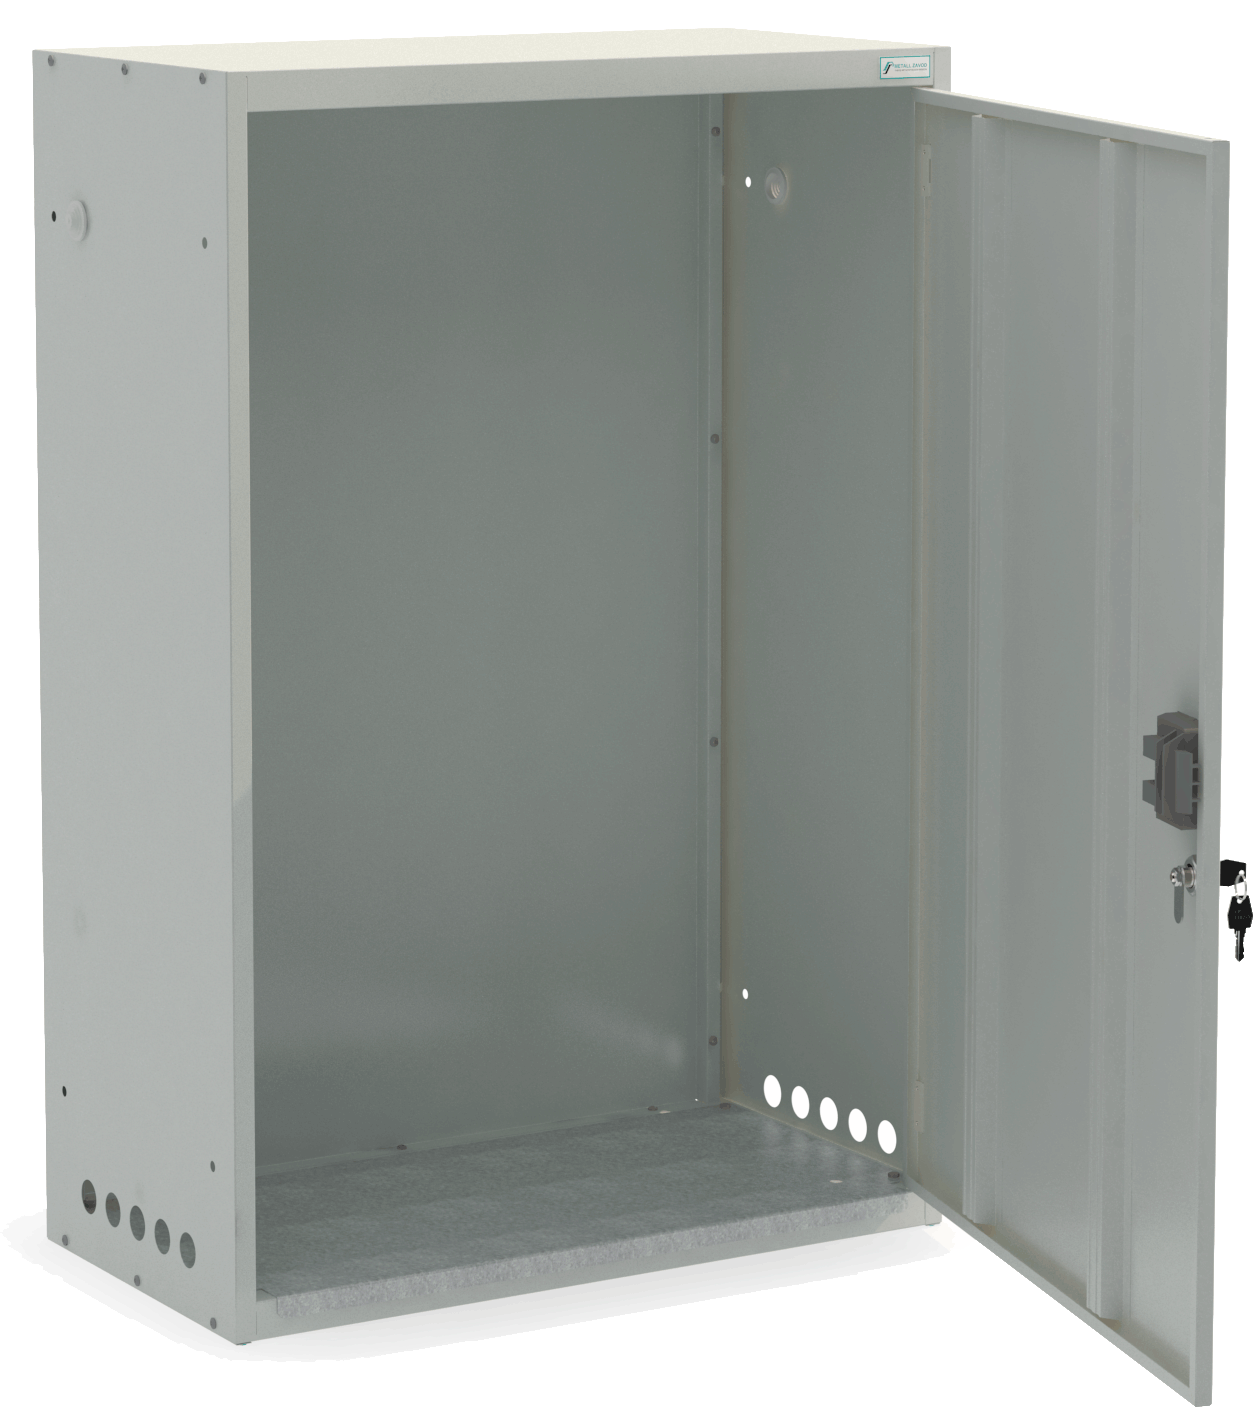 Шкаф для газовых баллонов ШГР 50-2